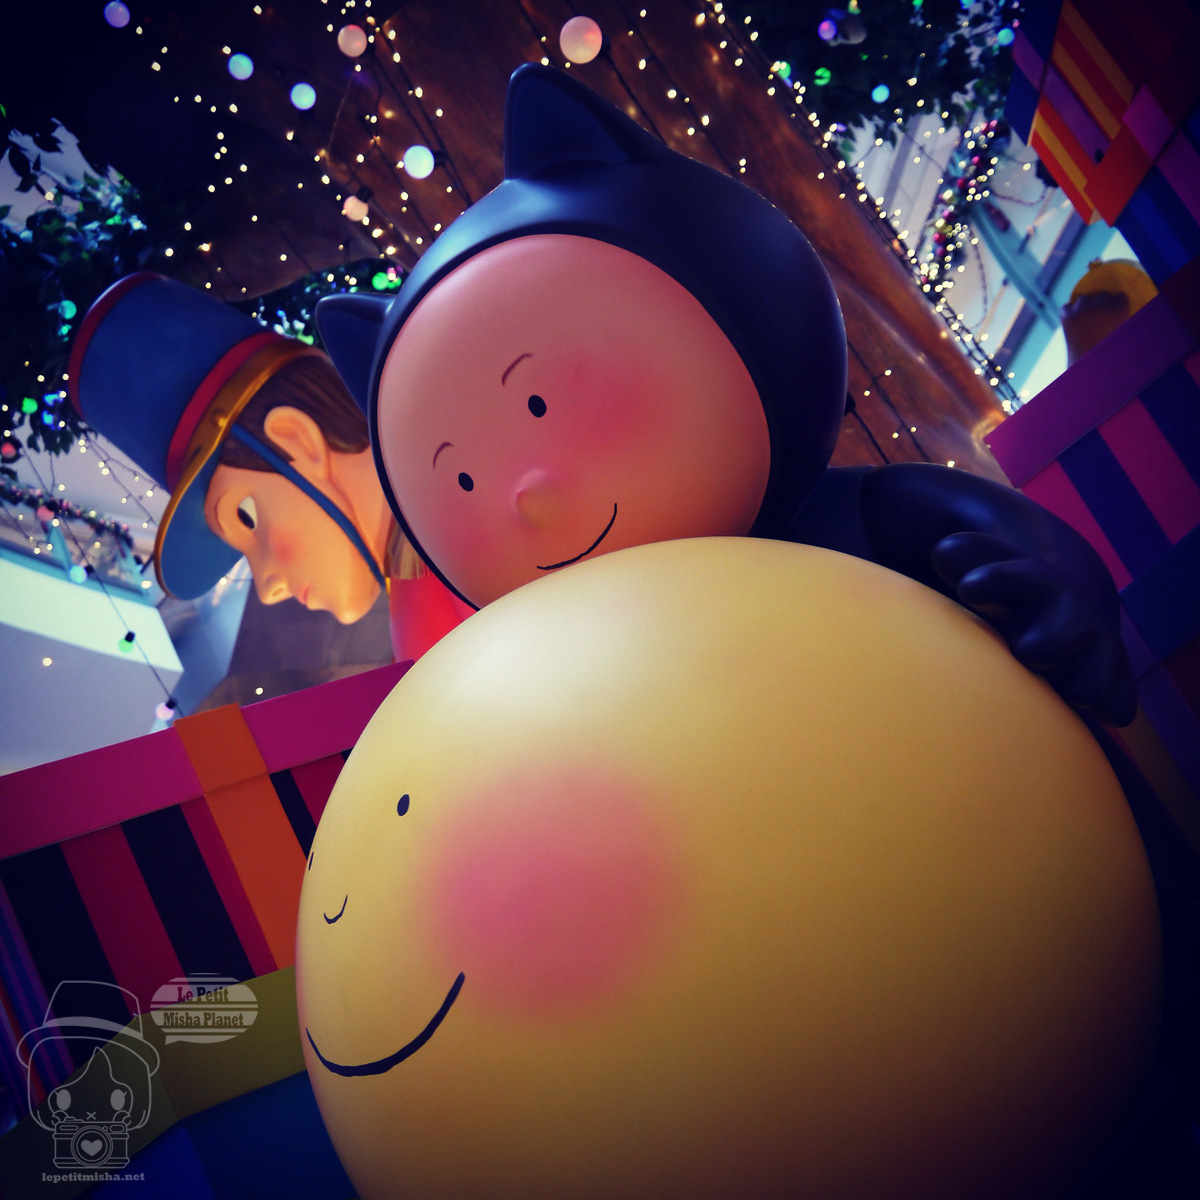 【九龍灣】德福廣場 x 幾米地下鐵 聖誕之旅 @2014香港聖誕